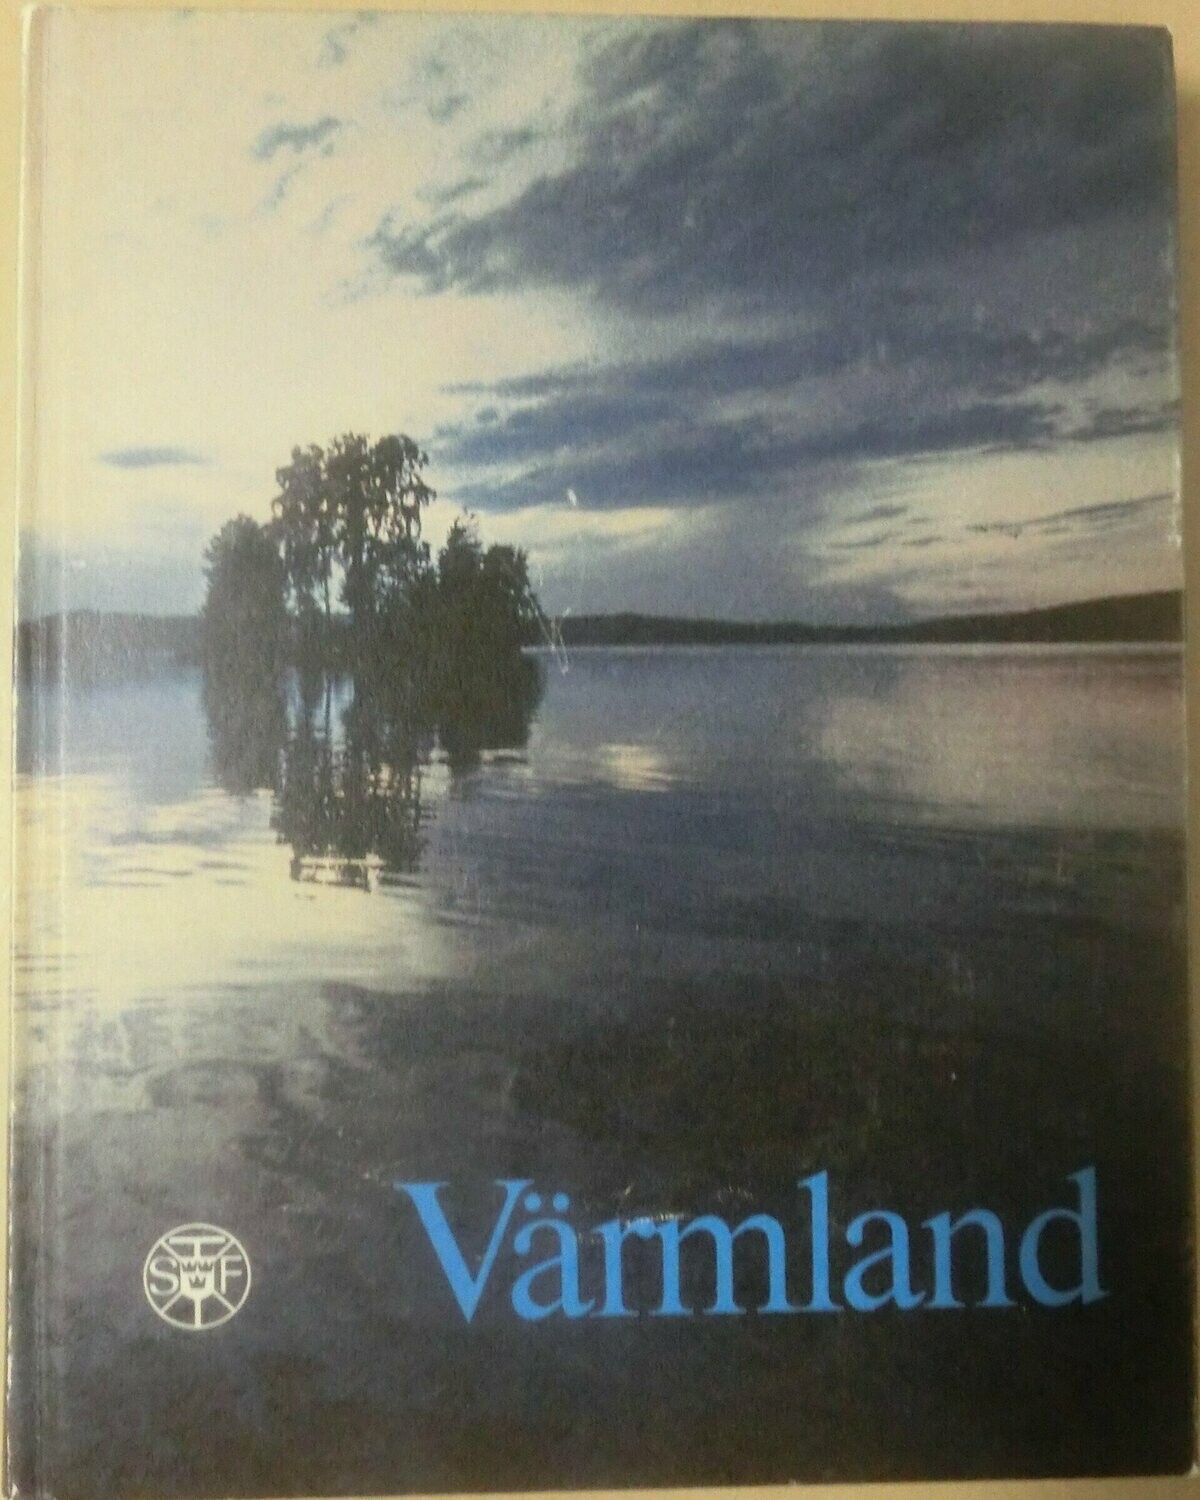 STF årsskrift 1985 - Värmland